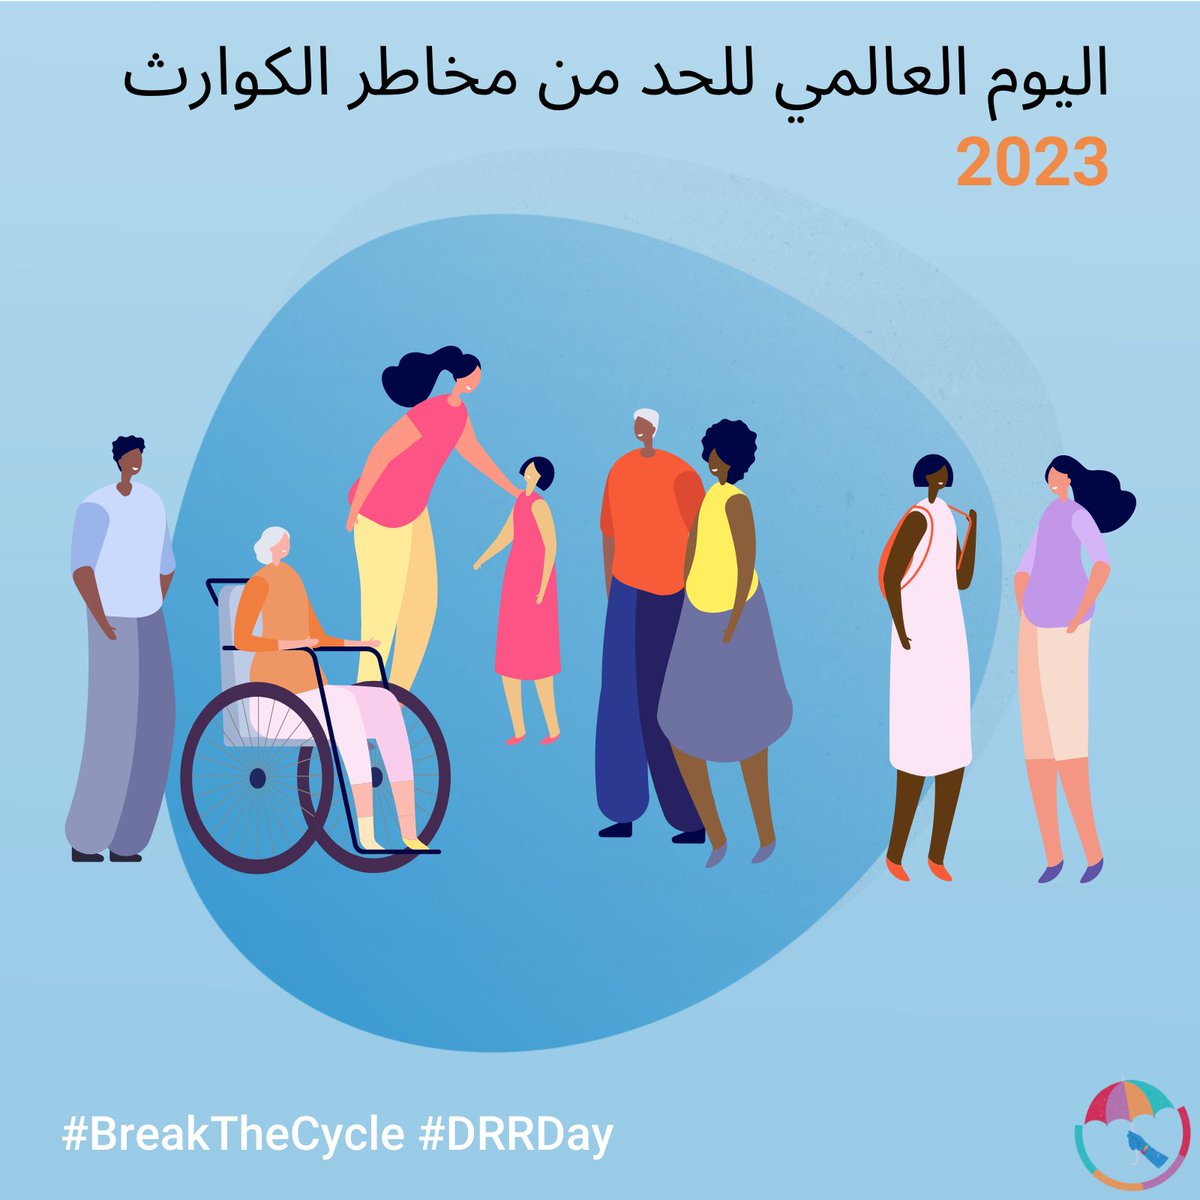 بمناسبة اليوم العالمي للحد من مخاطر الكوارث نؤكد على التزامنا بتحقيق المساواة ومكافحة التمييز ودمج الفئات الضعيفة في هذا القطاع المهم #DRRday #BreakTheCycle #FightingInequality #UNDP #Jordan #SDGs